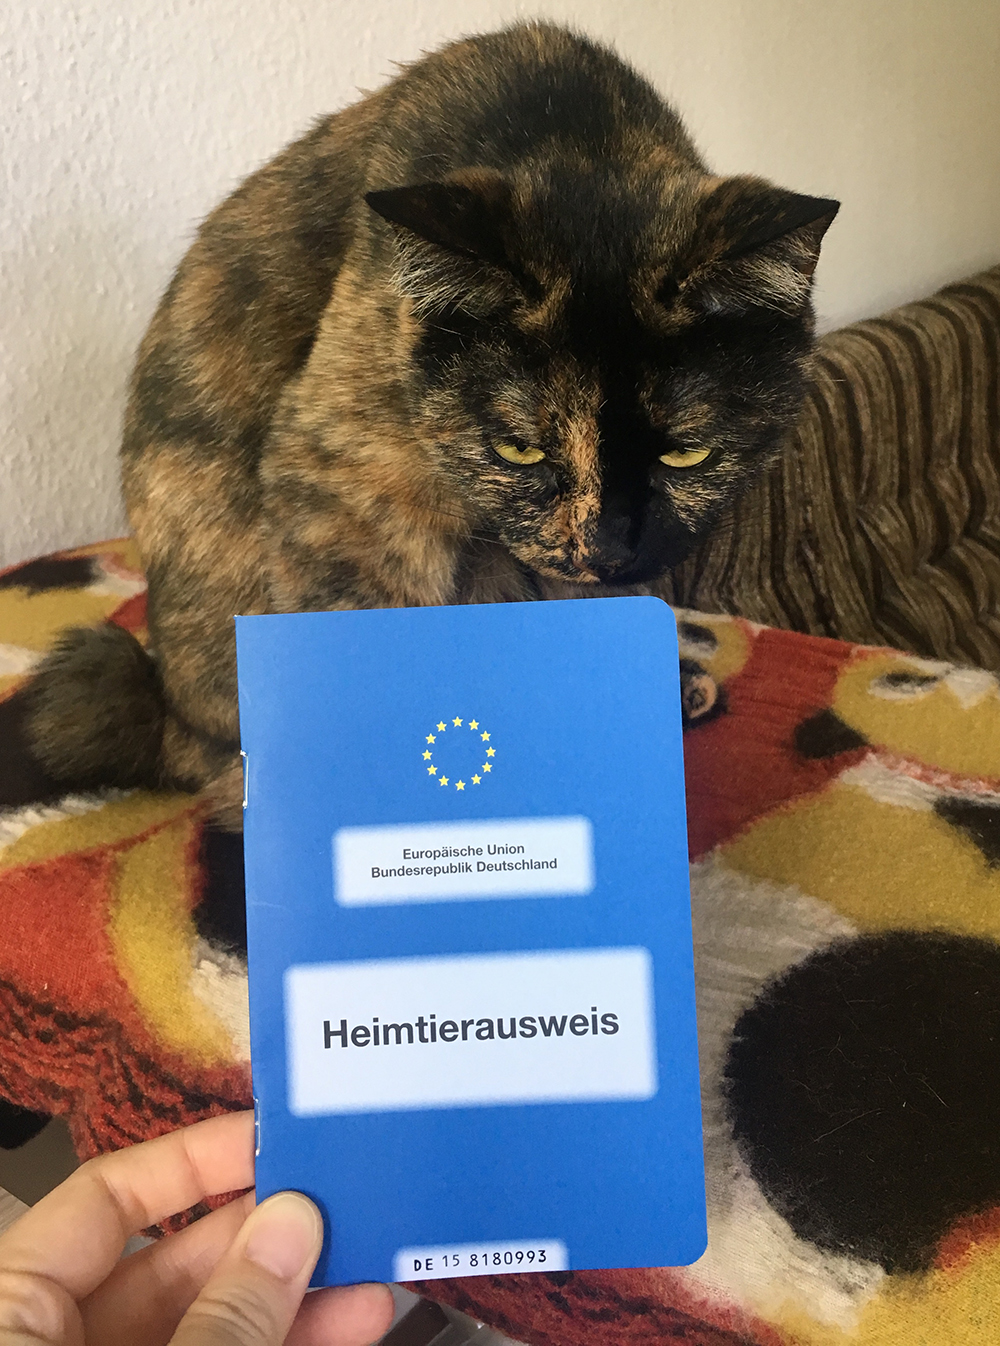 Heimtierausweis 英語でPet Passport